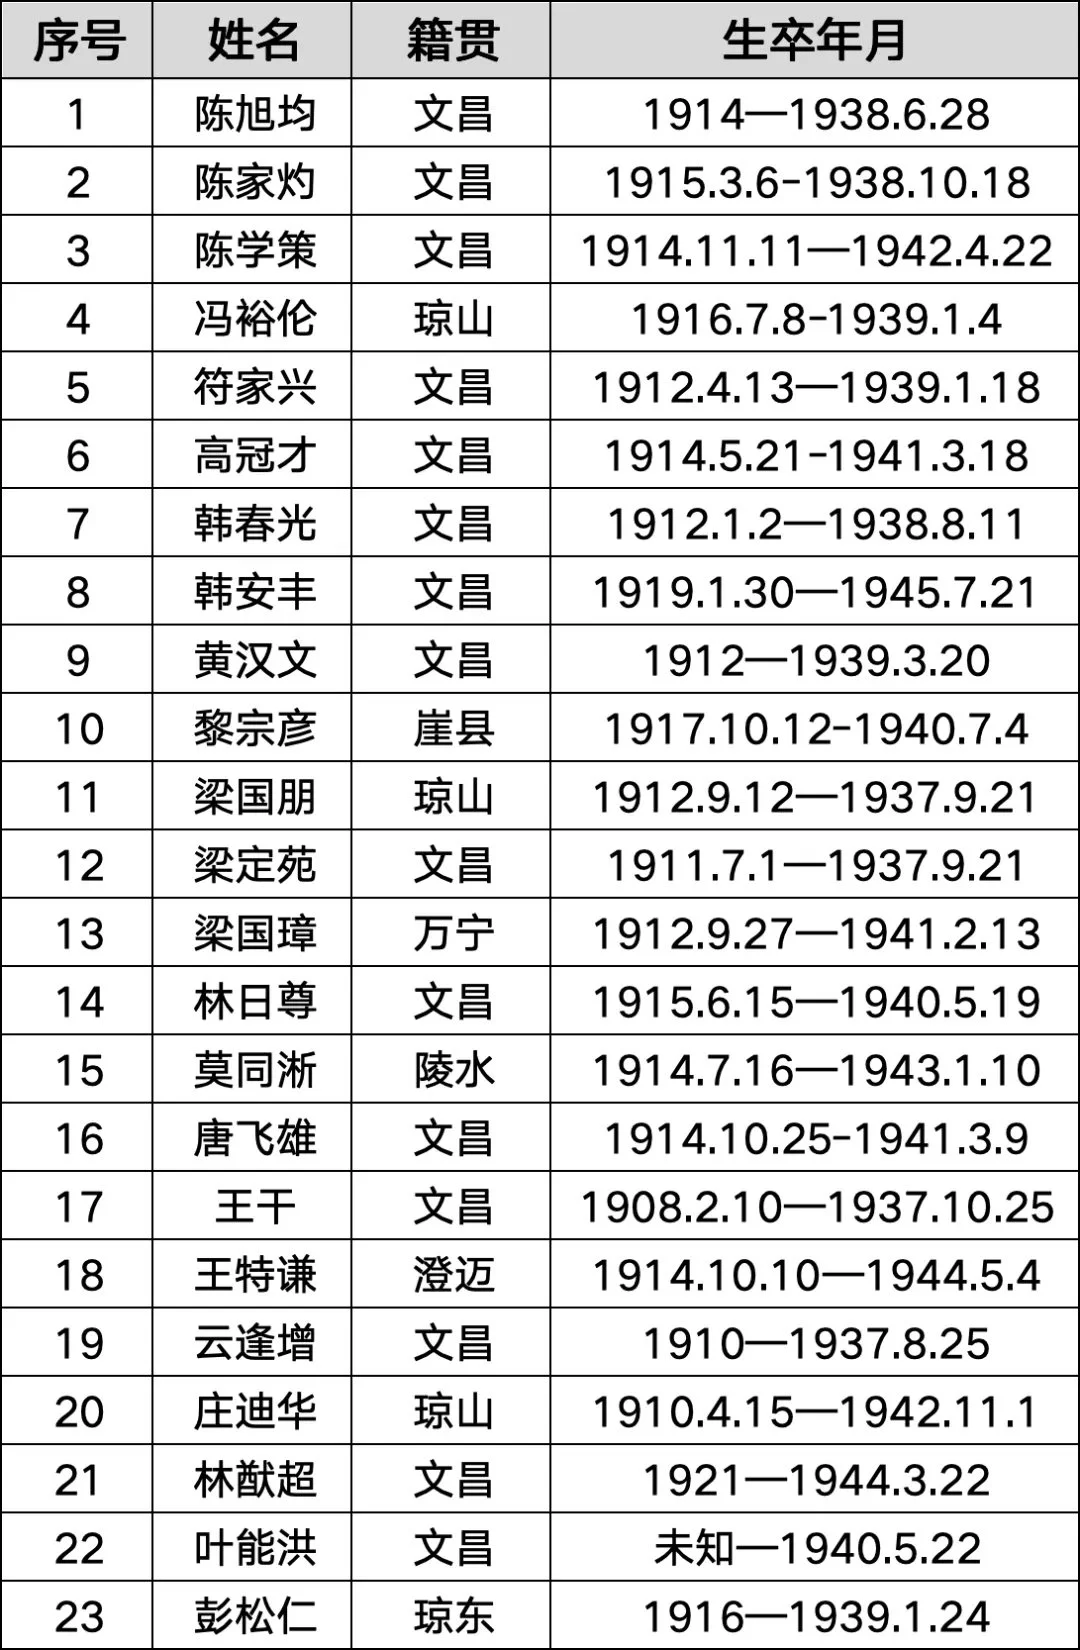 这23名英烈籍贯为海南中国籍抗日航空英烈名录首次公布